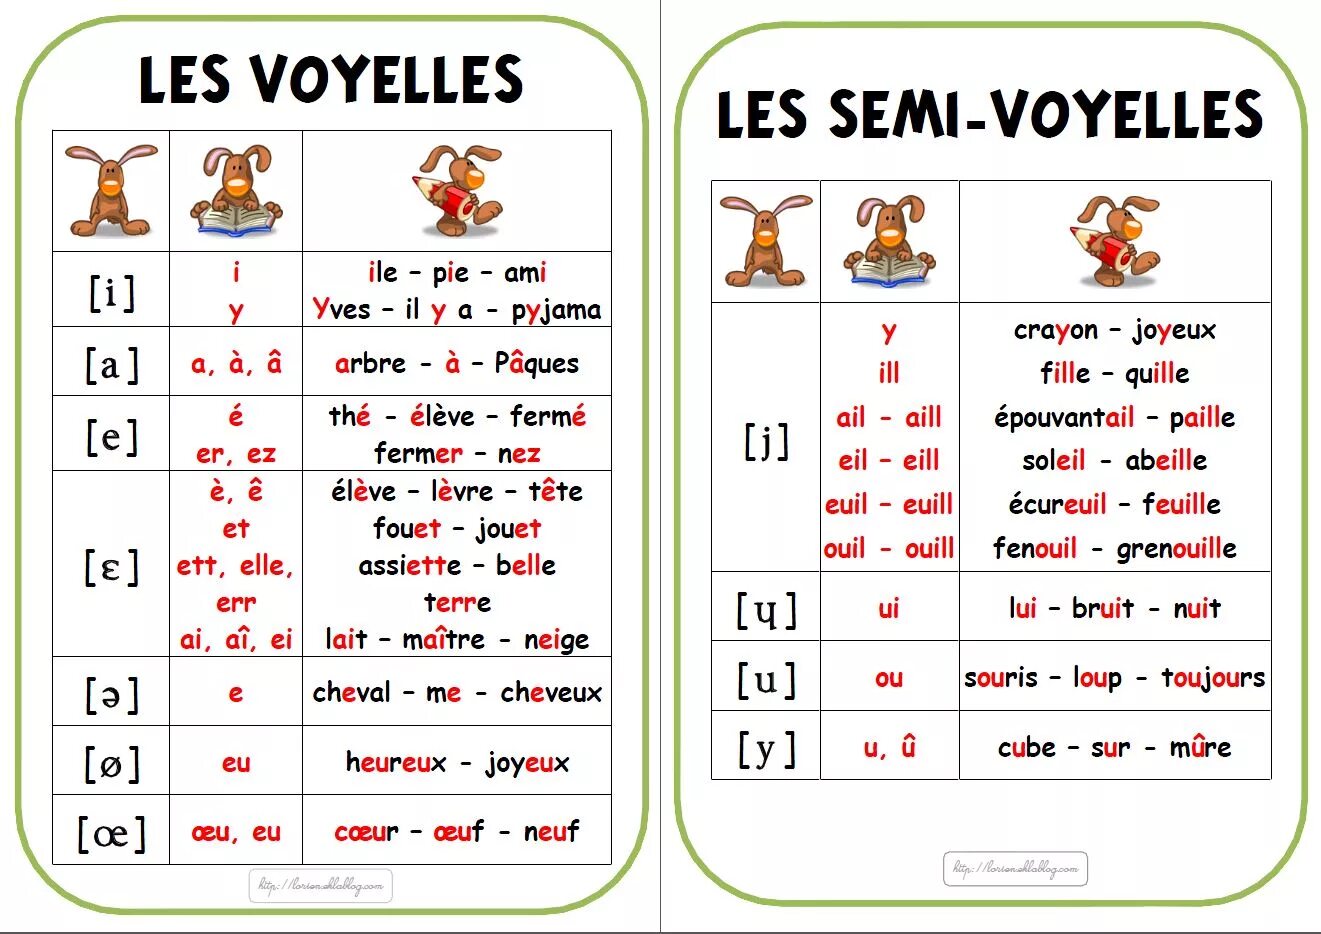 S как звучит. Правила чтения французского языка гласные. Сводная таблица звуков французского языка. Сочетание гласных во французском языке. Французские правила чтения в таблице.